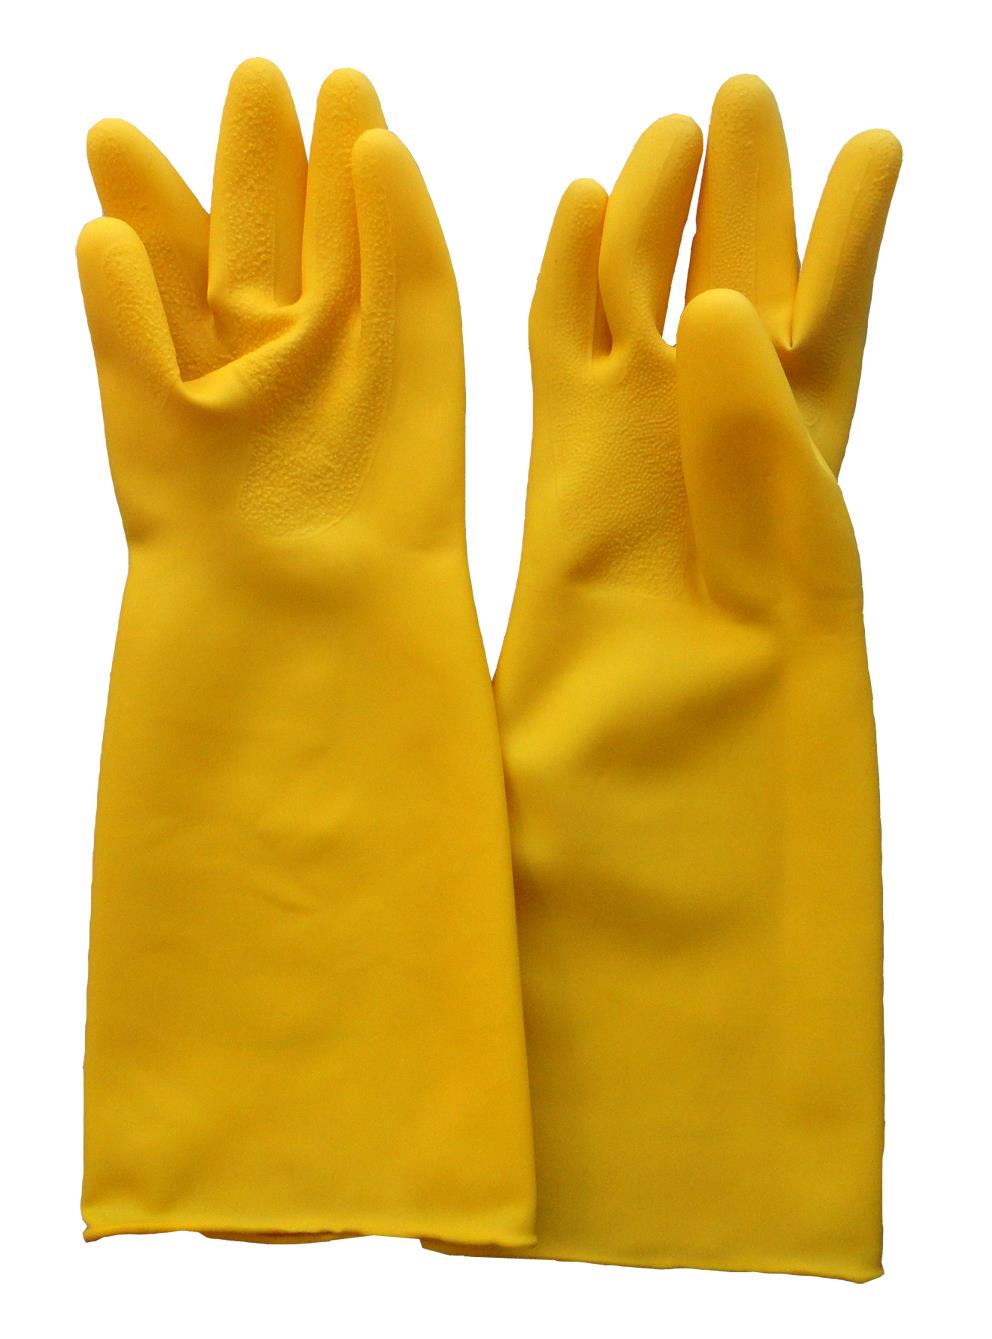 ถุงมือยางธรรมชาติ,ถุงมือยางสีเหลือง,DINO,Plant and Facility Equipment/Safety Equipment/Gloves & Hand Protection